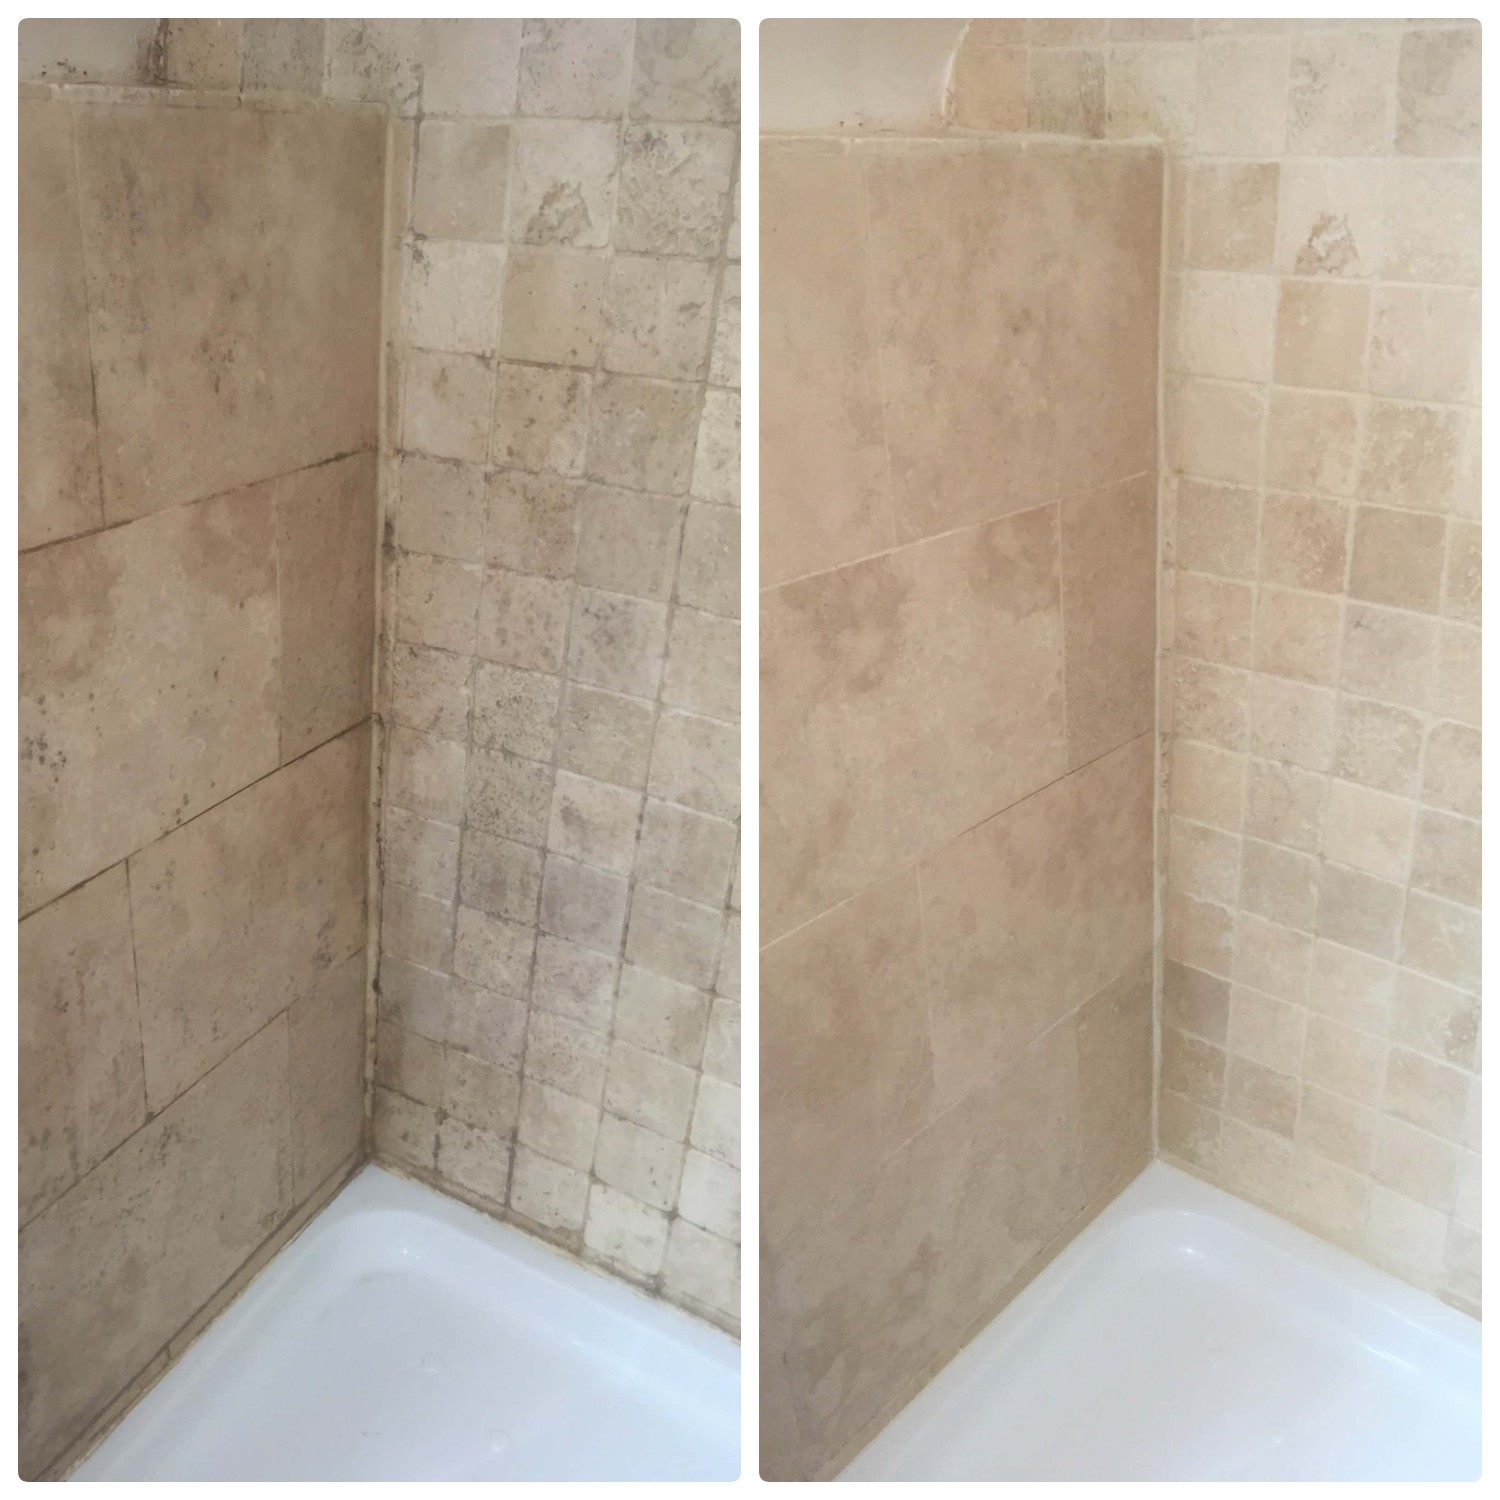 dirty travertine shower next to clean travertine shower